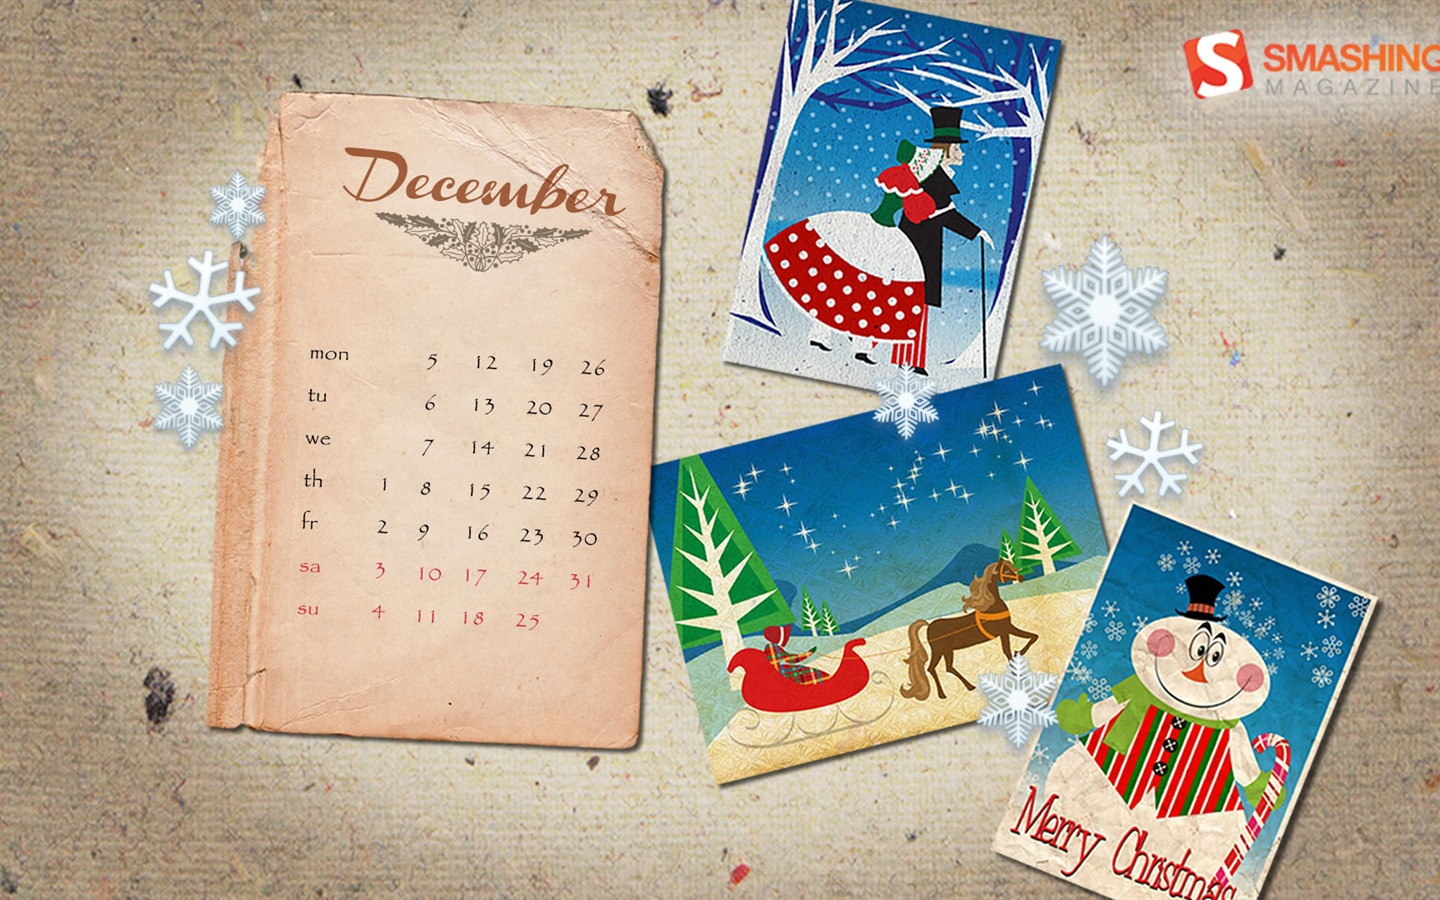 December 2011 Calendar wallpaper (2) #8 - 1440x900